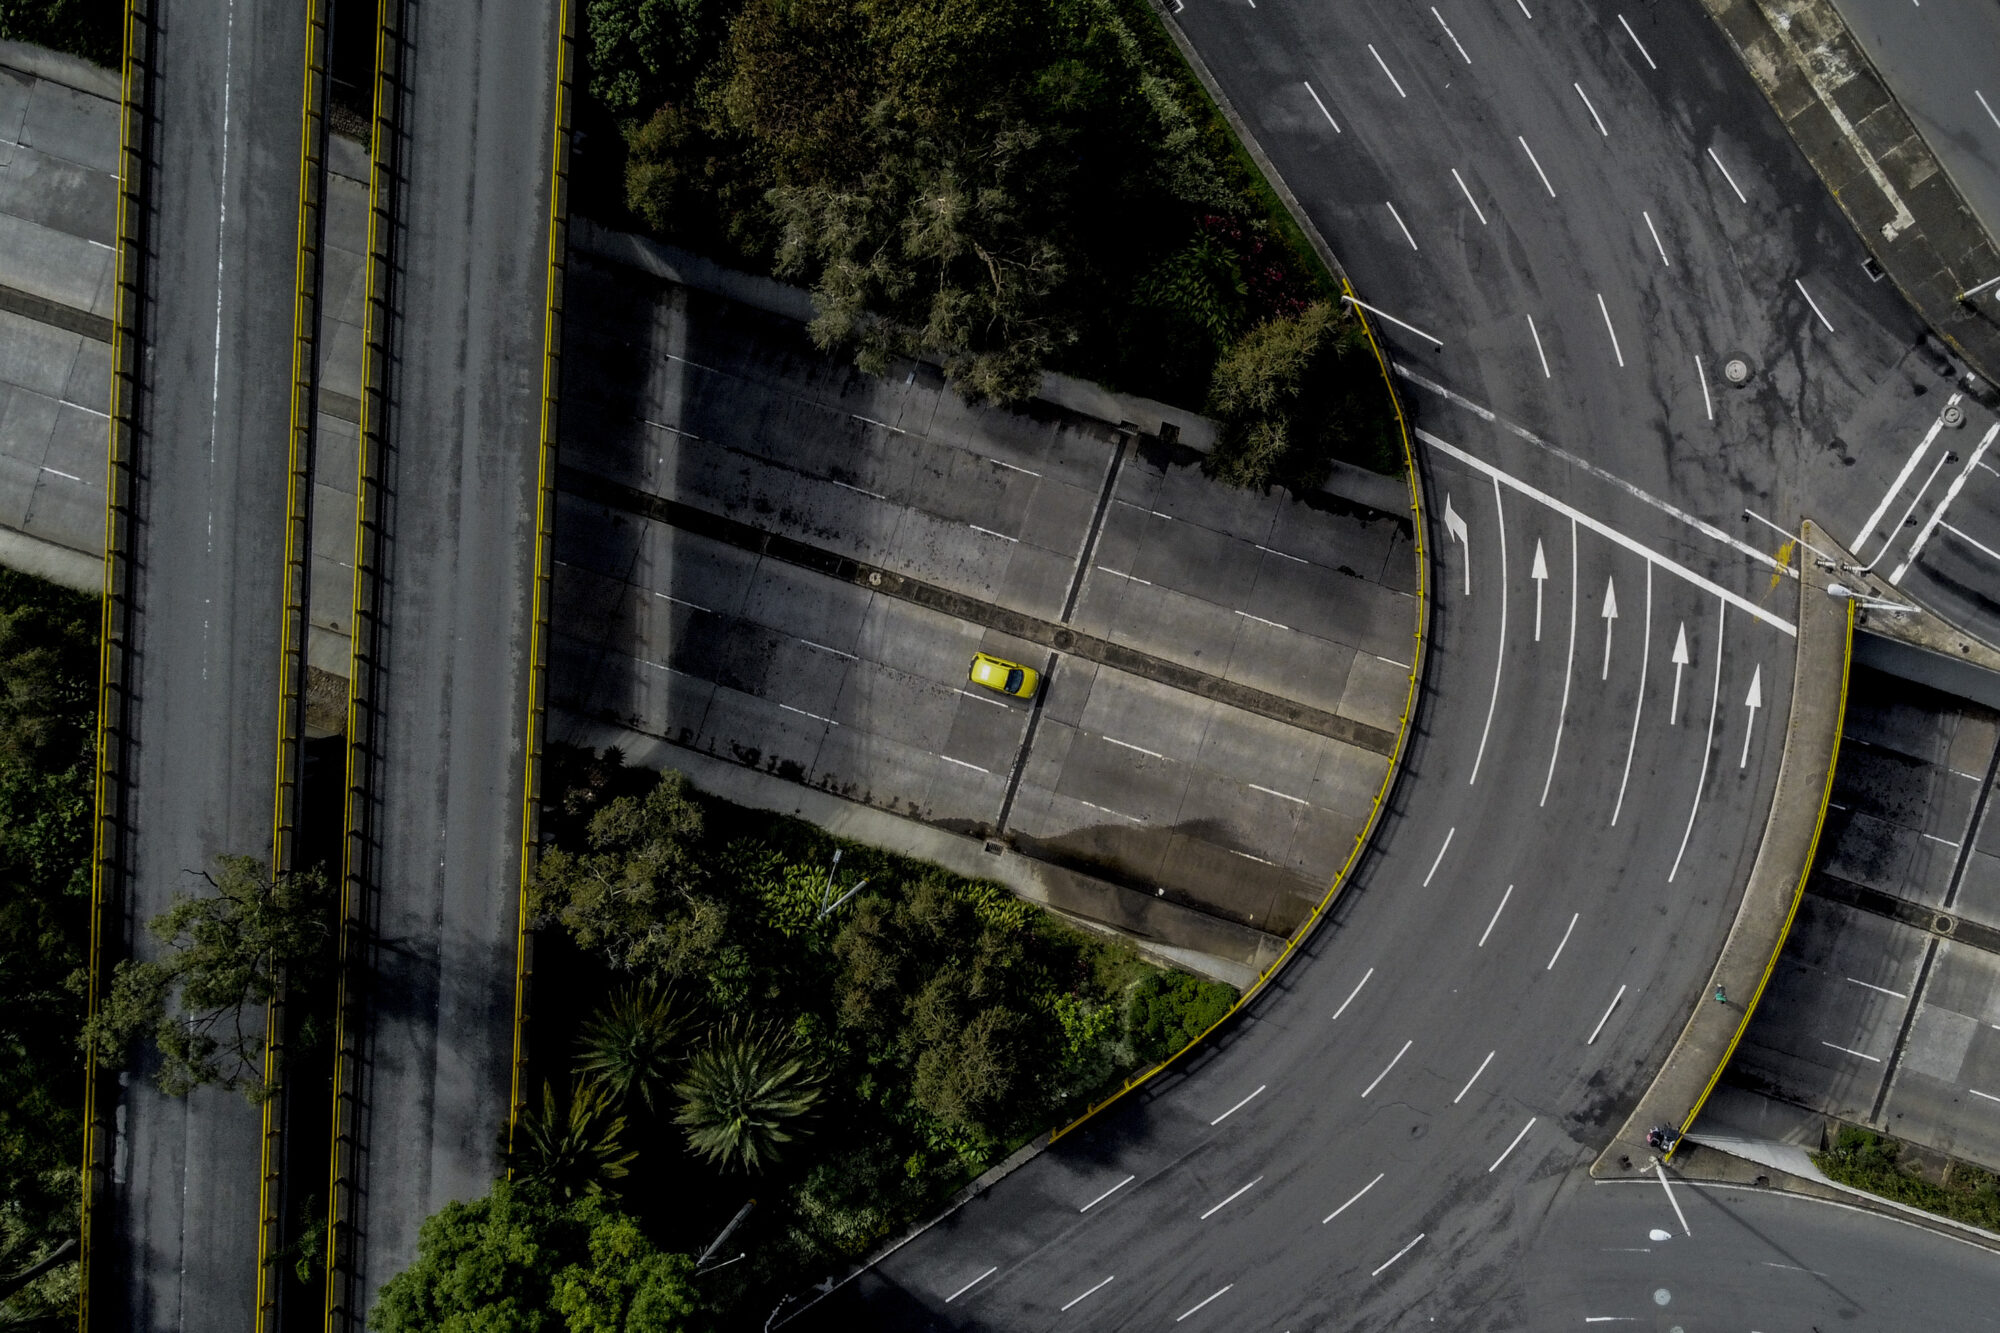 <p>Las mejoras de las carreteras en Colombia se aceleran tras años de retraso. Una nueva carretera, Mar 2, mejorará las conexiones entre las ciudades costeras y Medellín, la capital del departamento de Antioquia, en la foto. (Imagen: IMF Photo / Joaquin Sarmiento / <a href="https://www.flickr.com/photos/imfphoto/51063005151/">Flickr CC BY-NC-ND 2.0</a>)</p>